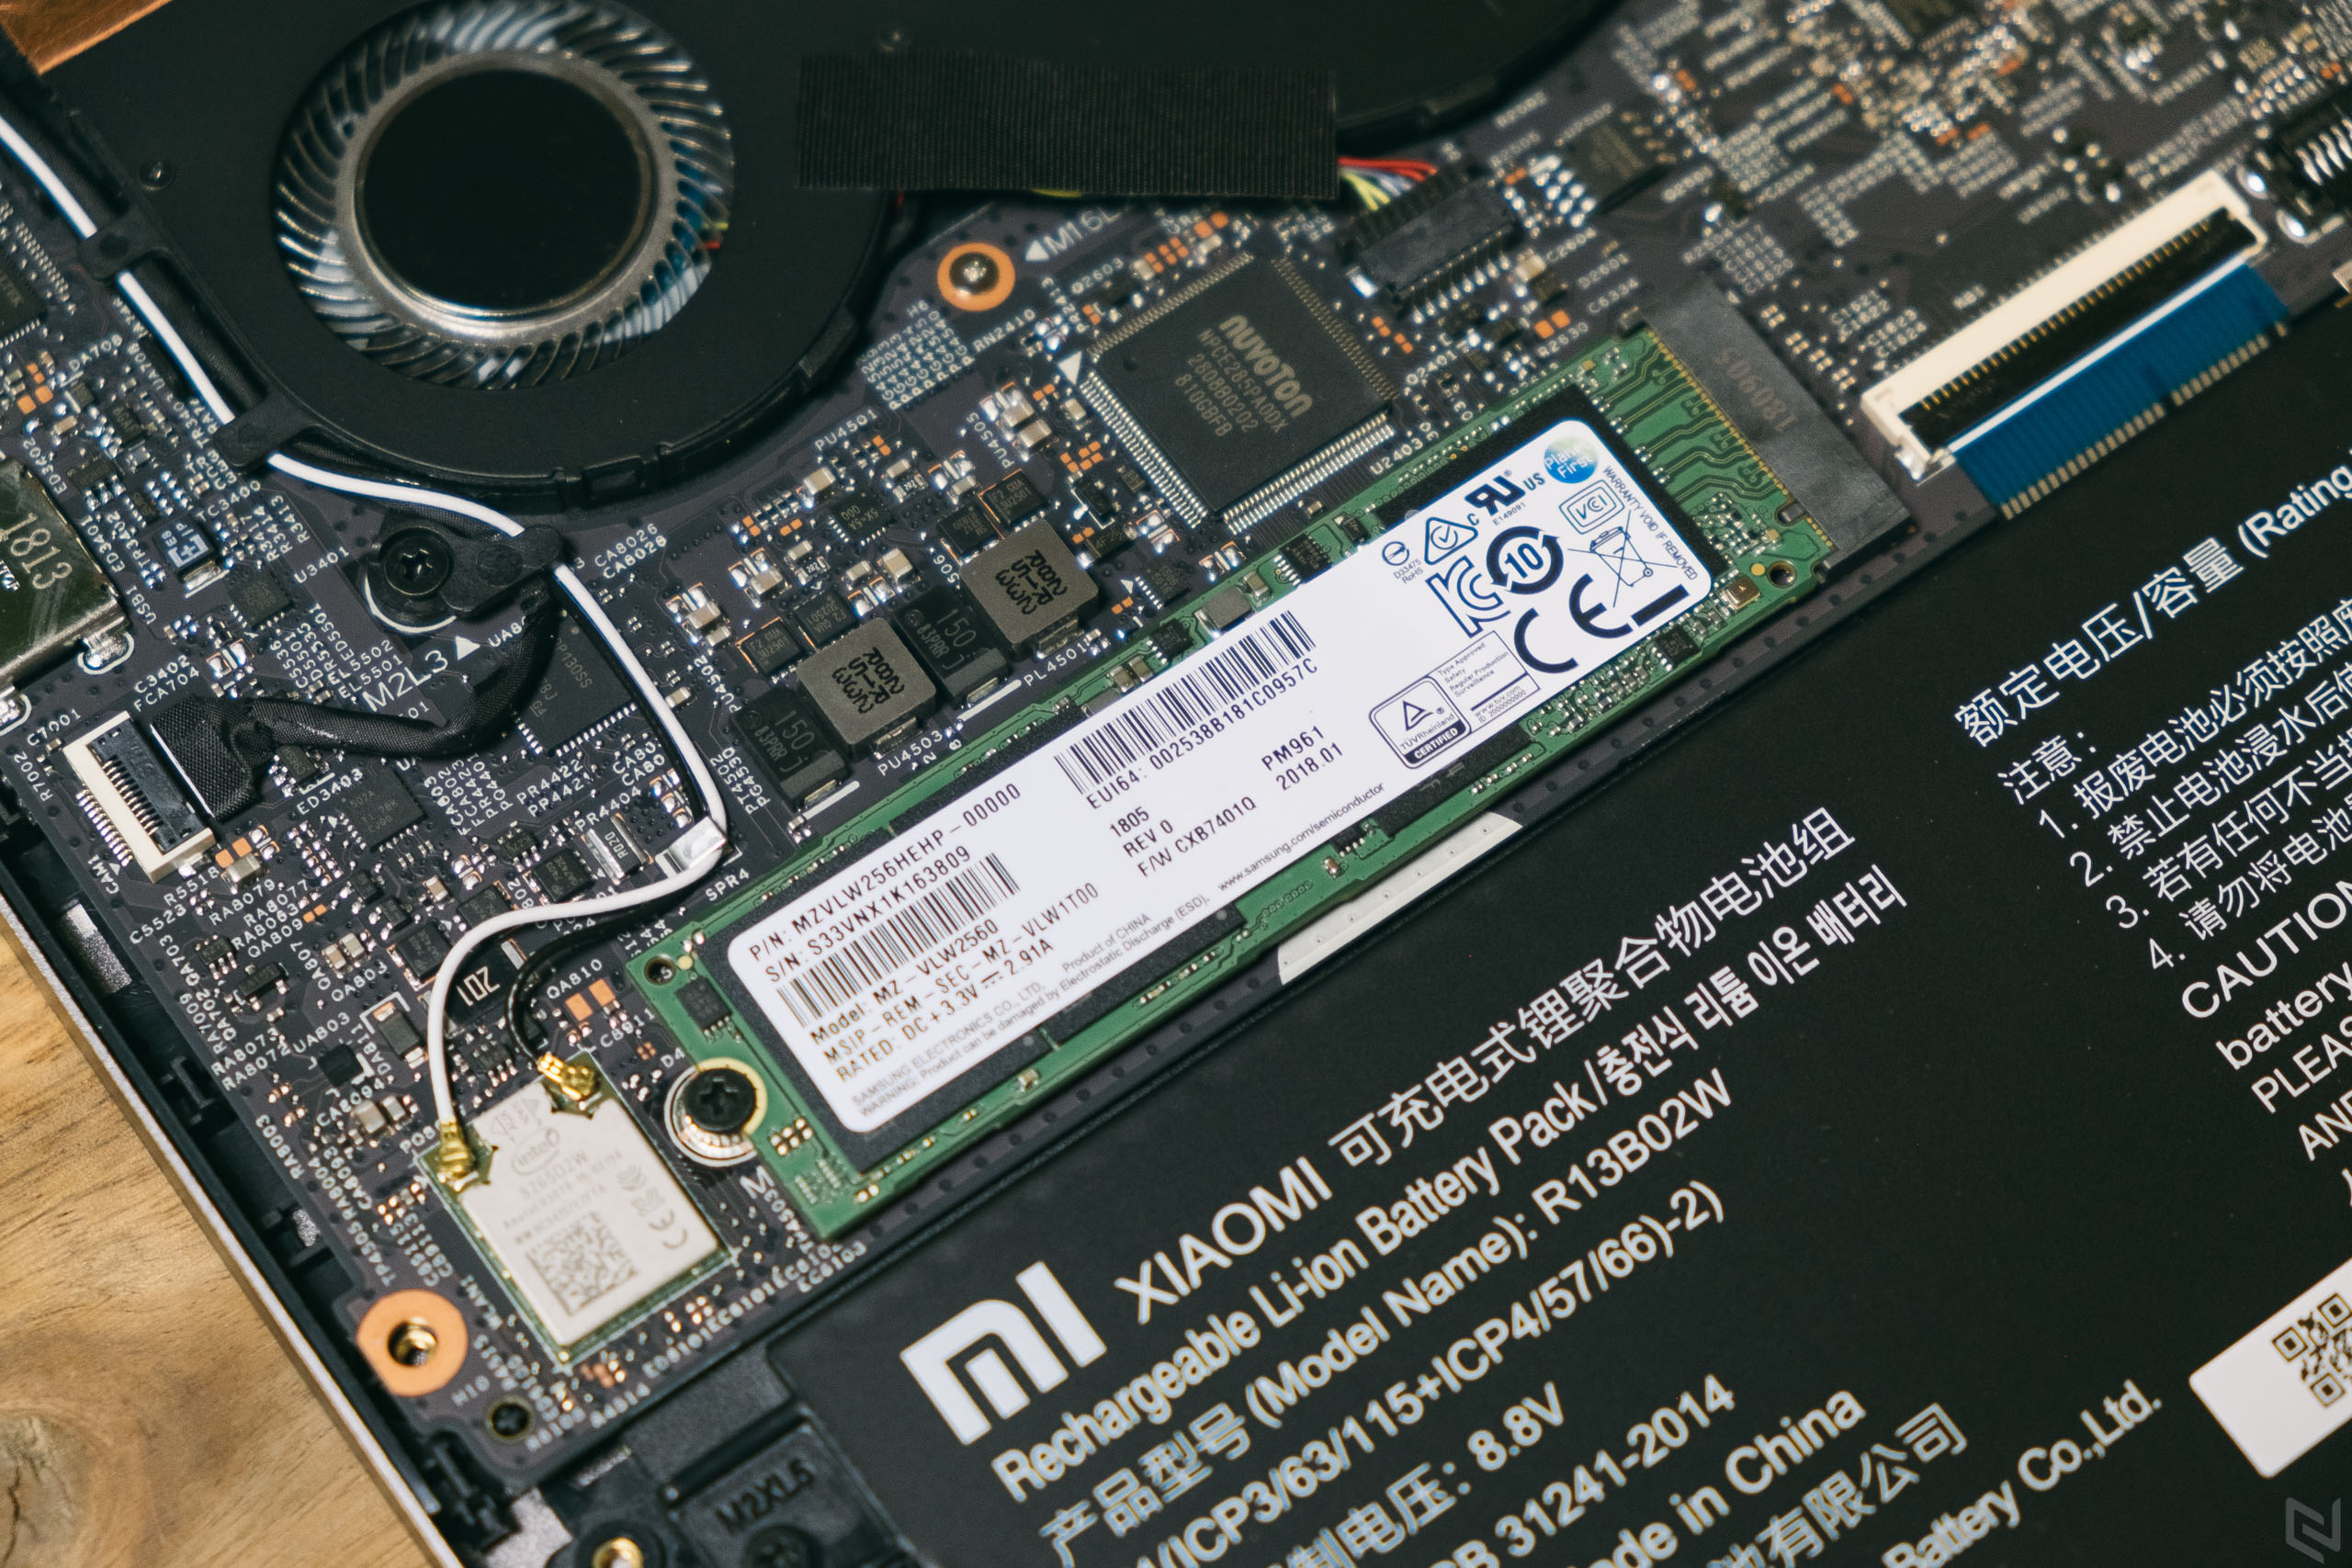 Đánh giá chi tiết Xiaomi Mi NoteBook Air 13.3: Thiết kế mẫu mực, đẹp gọn nhẹ, sử dụng Kaby Lake Refesh